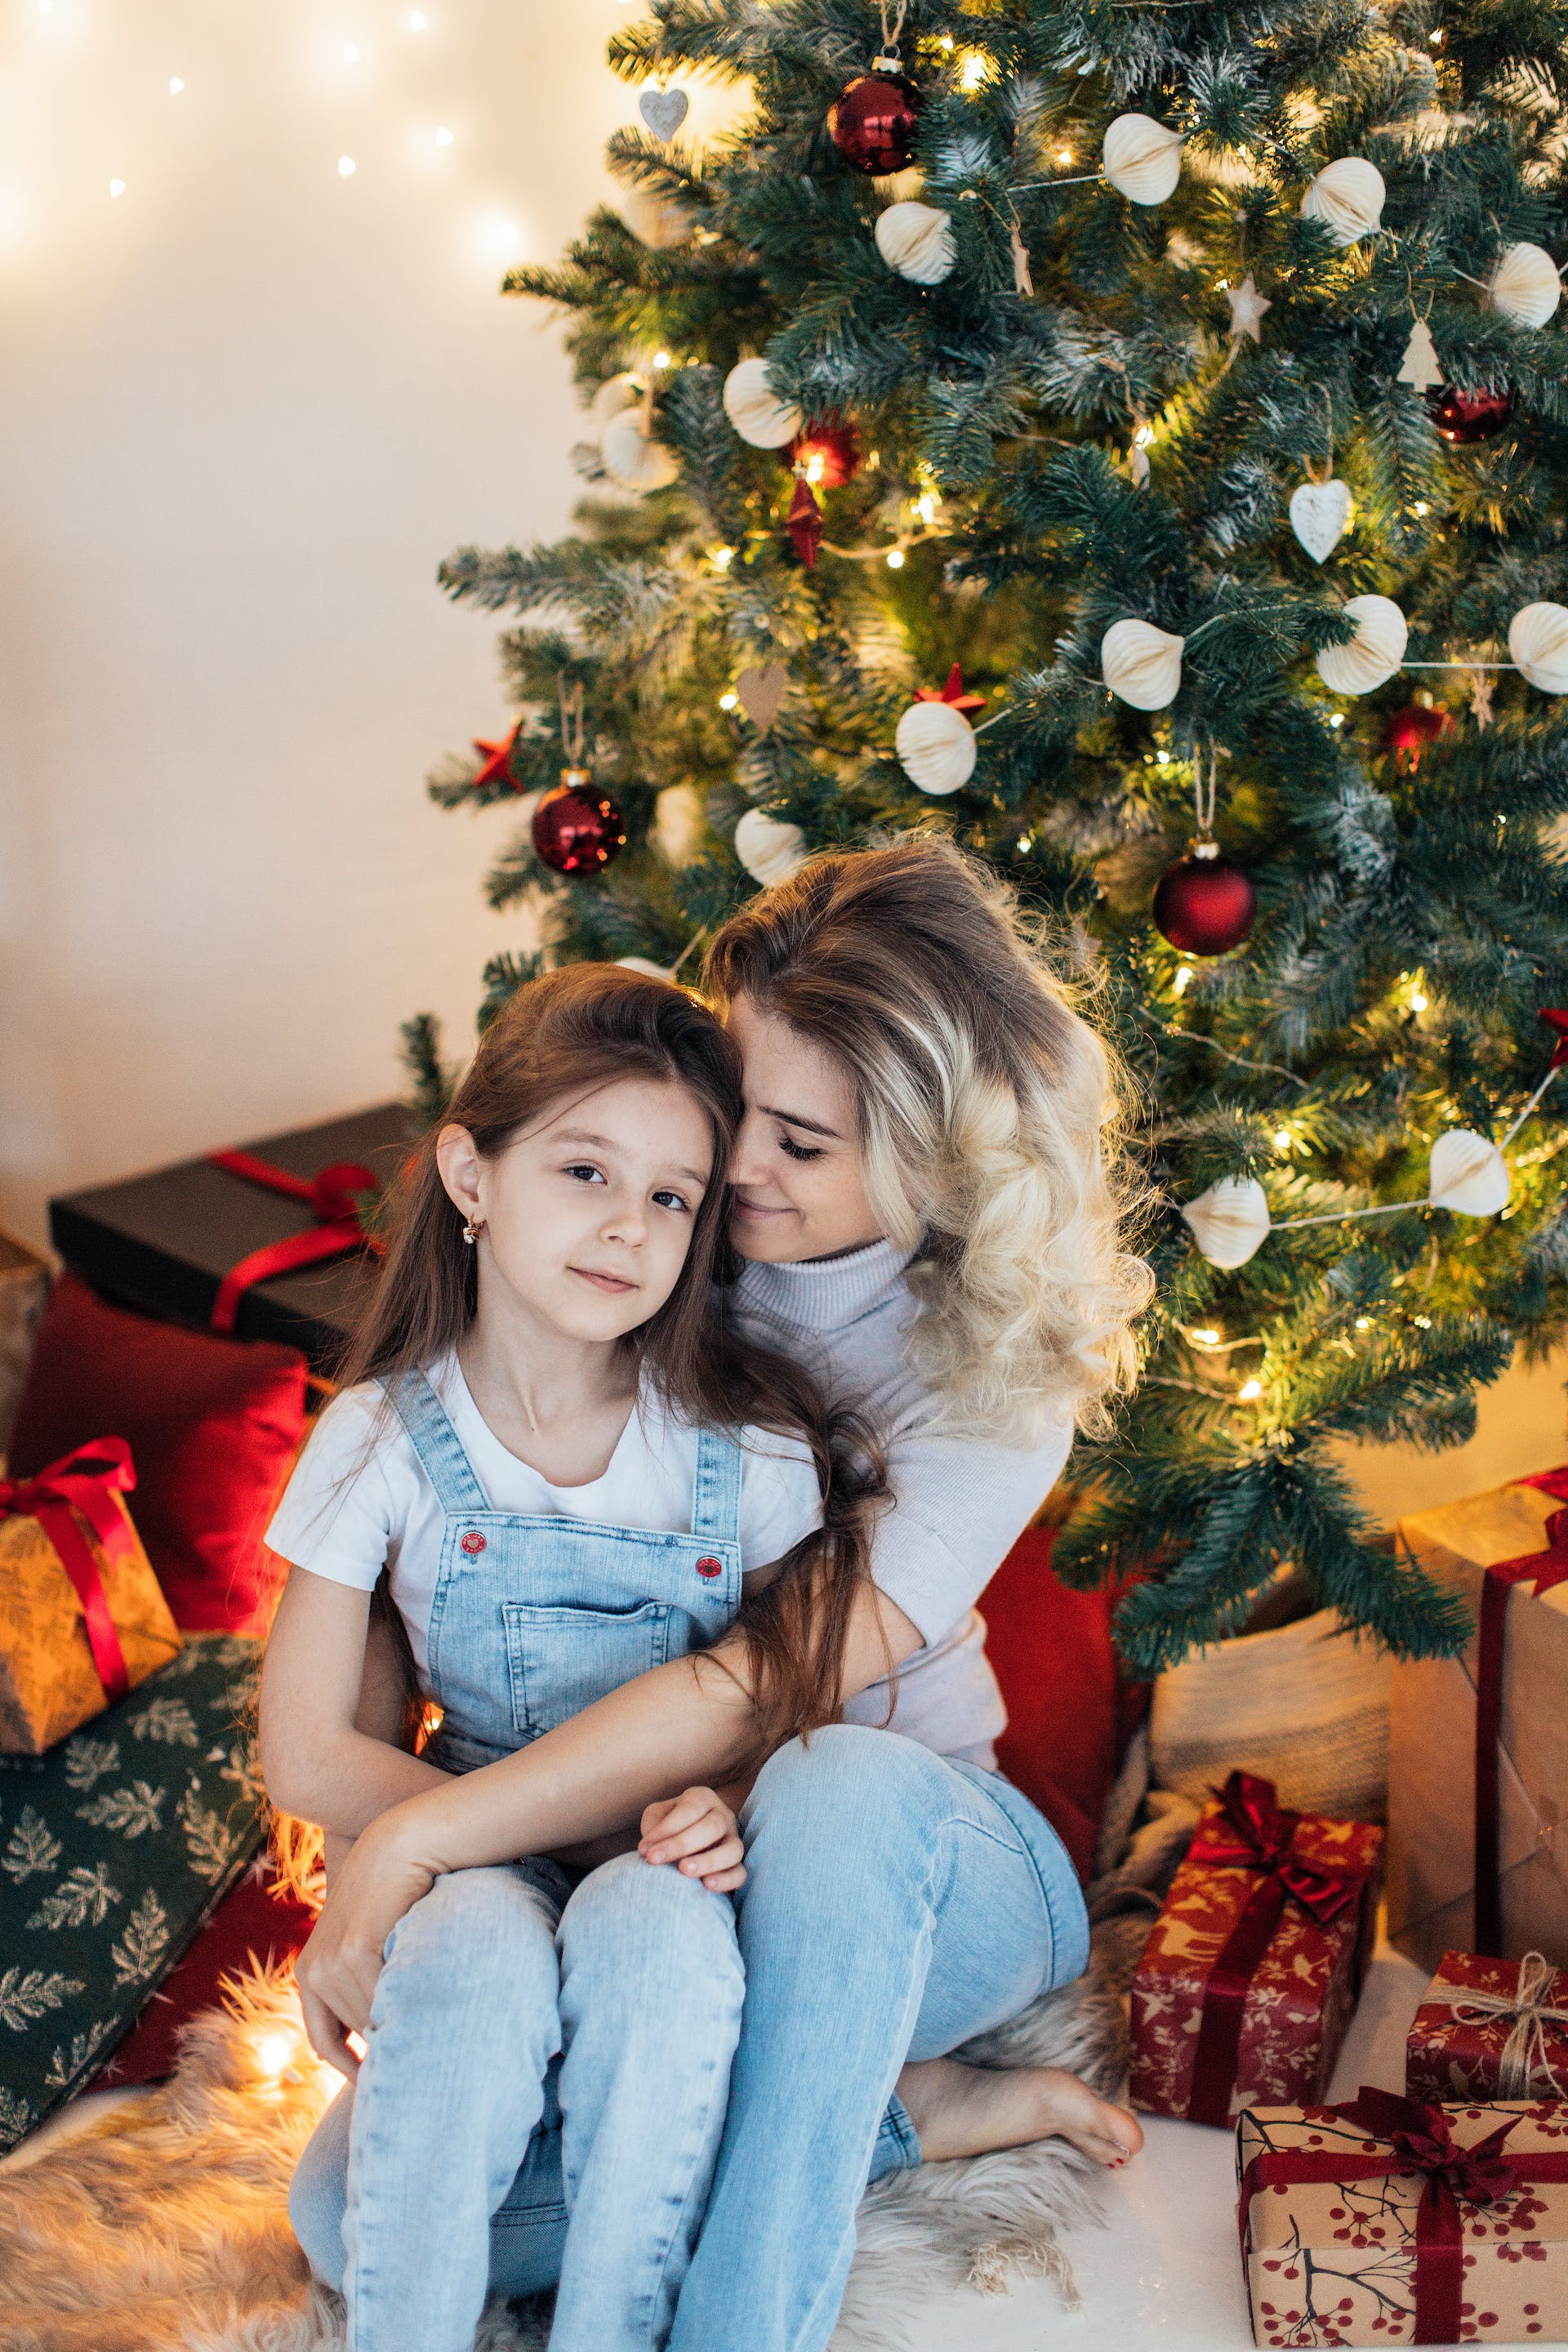 Une mère serrant sa fille dans ses bras alors qu'elle est assise à côté d'un sapin de Noël | Source : Pexels